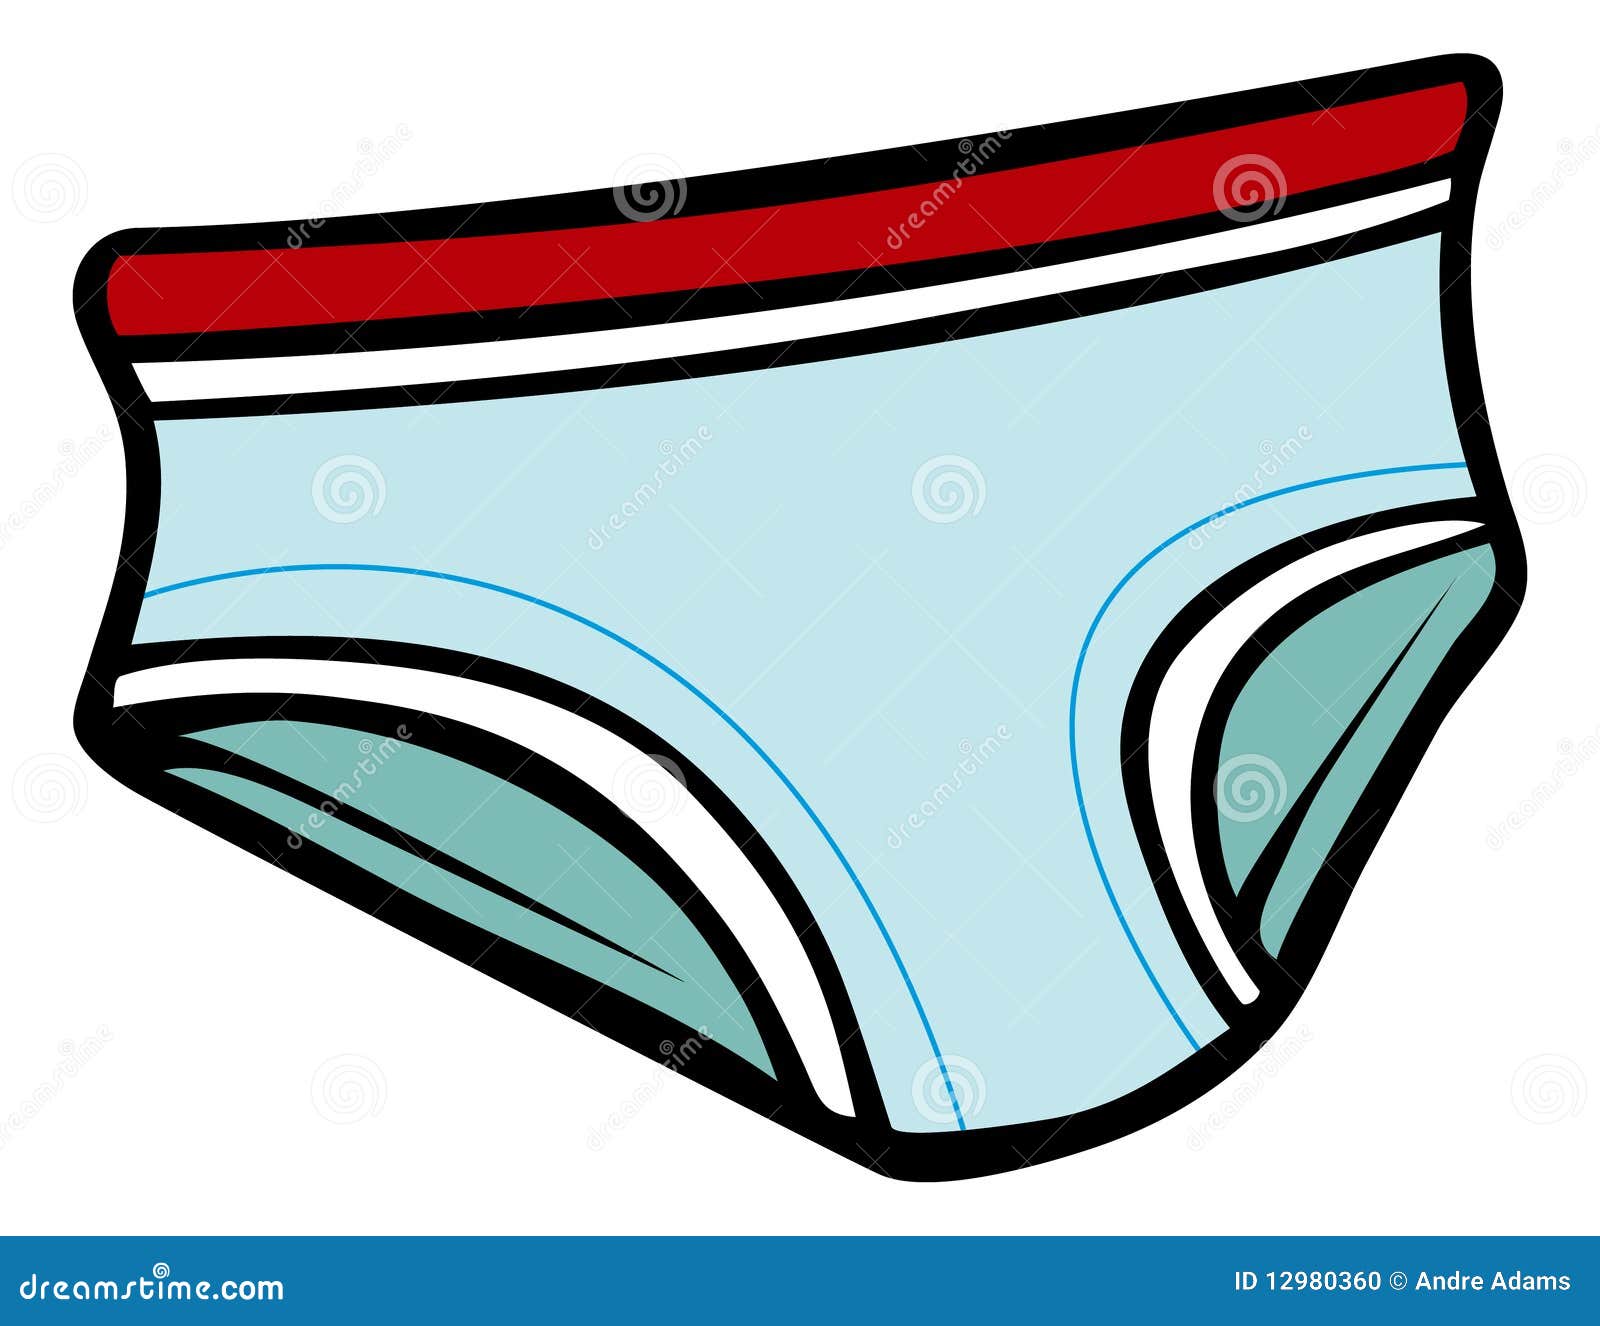 underwear cartoon clip art - photo #2